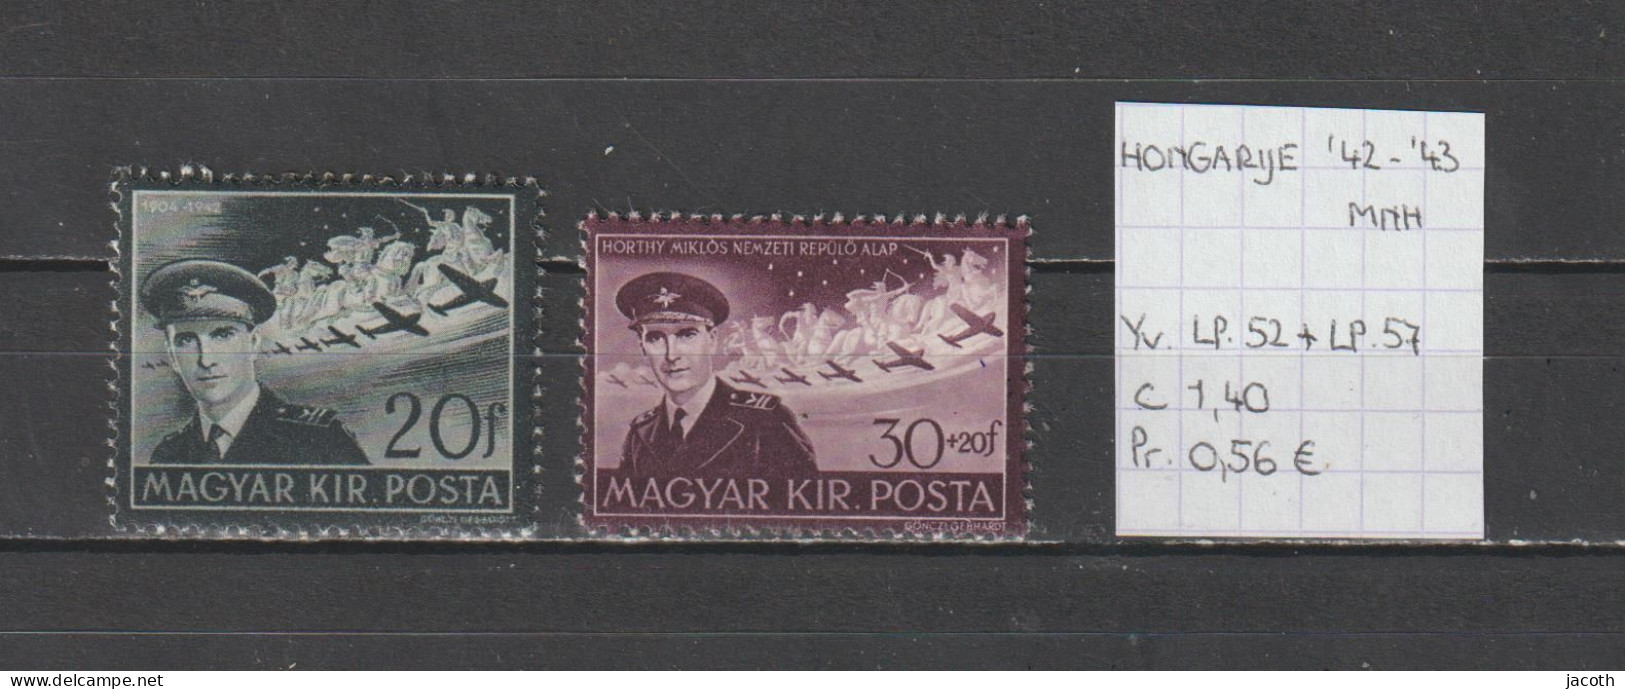 (TJ) Hongarije 1942-'43 - YT LP. 52 + 57 (postfris/neuf/MNH) - Ungebraucht